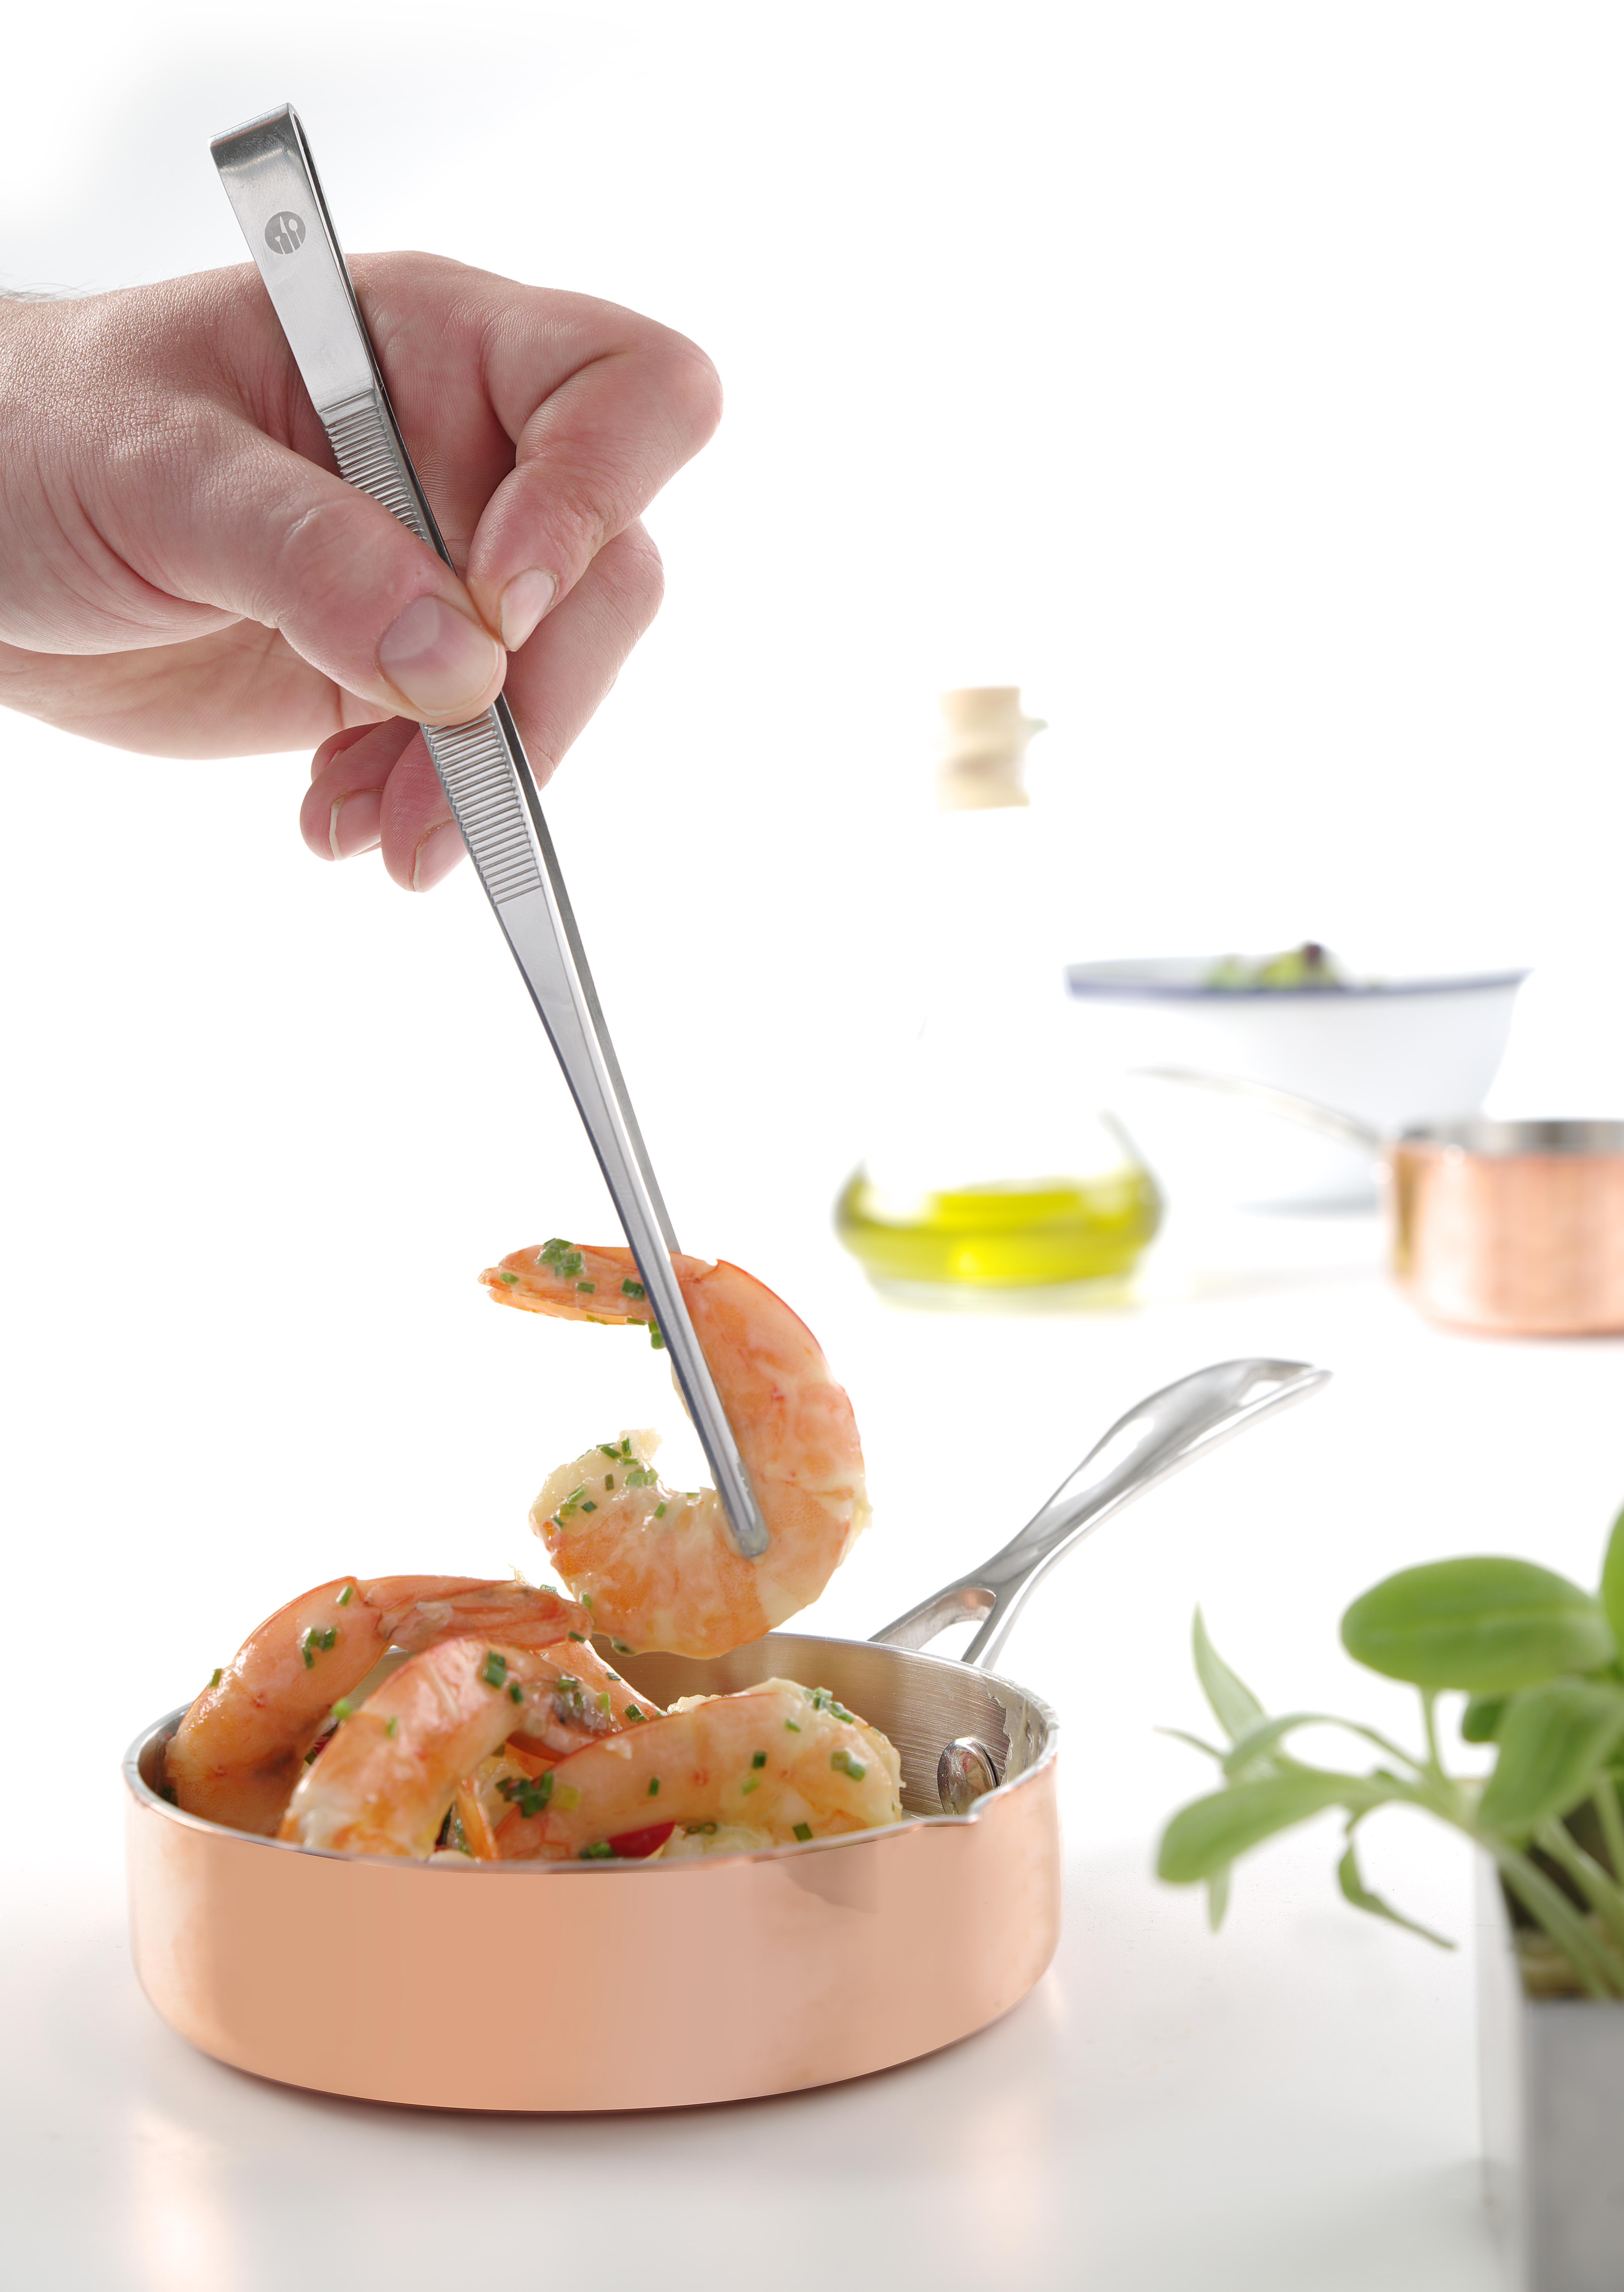 Pince à salade inox 25 cm - Hendi food service equipement - Ustensiles et  accessoires de cuisine pro - référence 171752 - Stock-Direct CHR